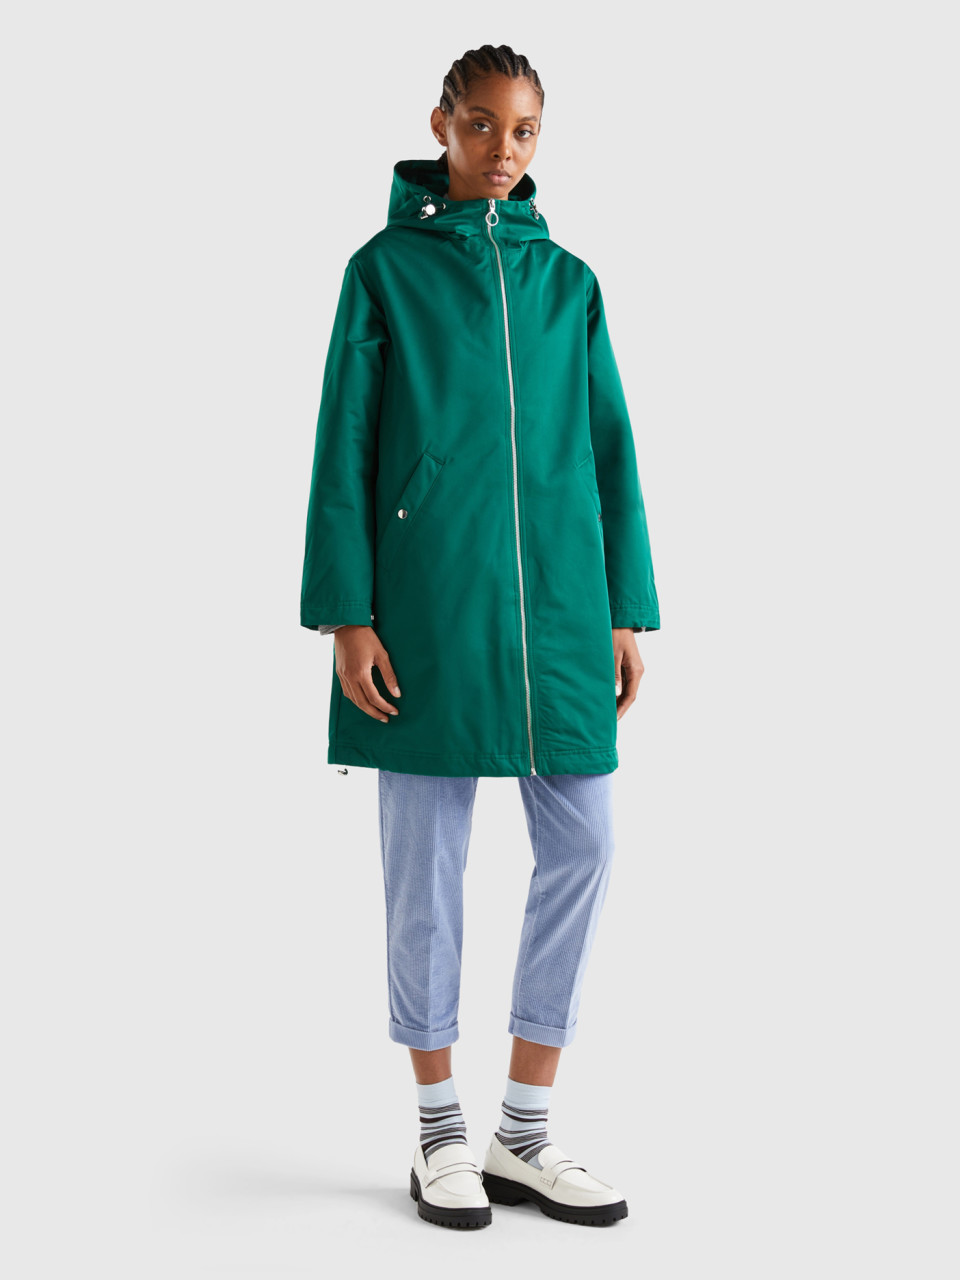 Benetton, Nylon Rainproof Jacket, Green, Women